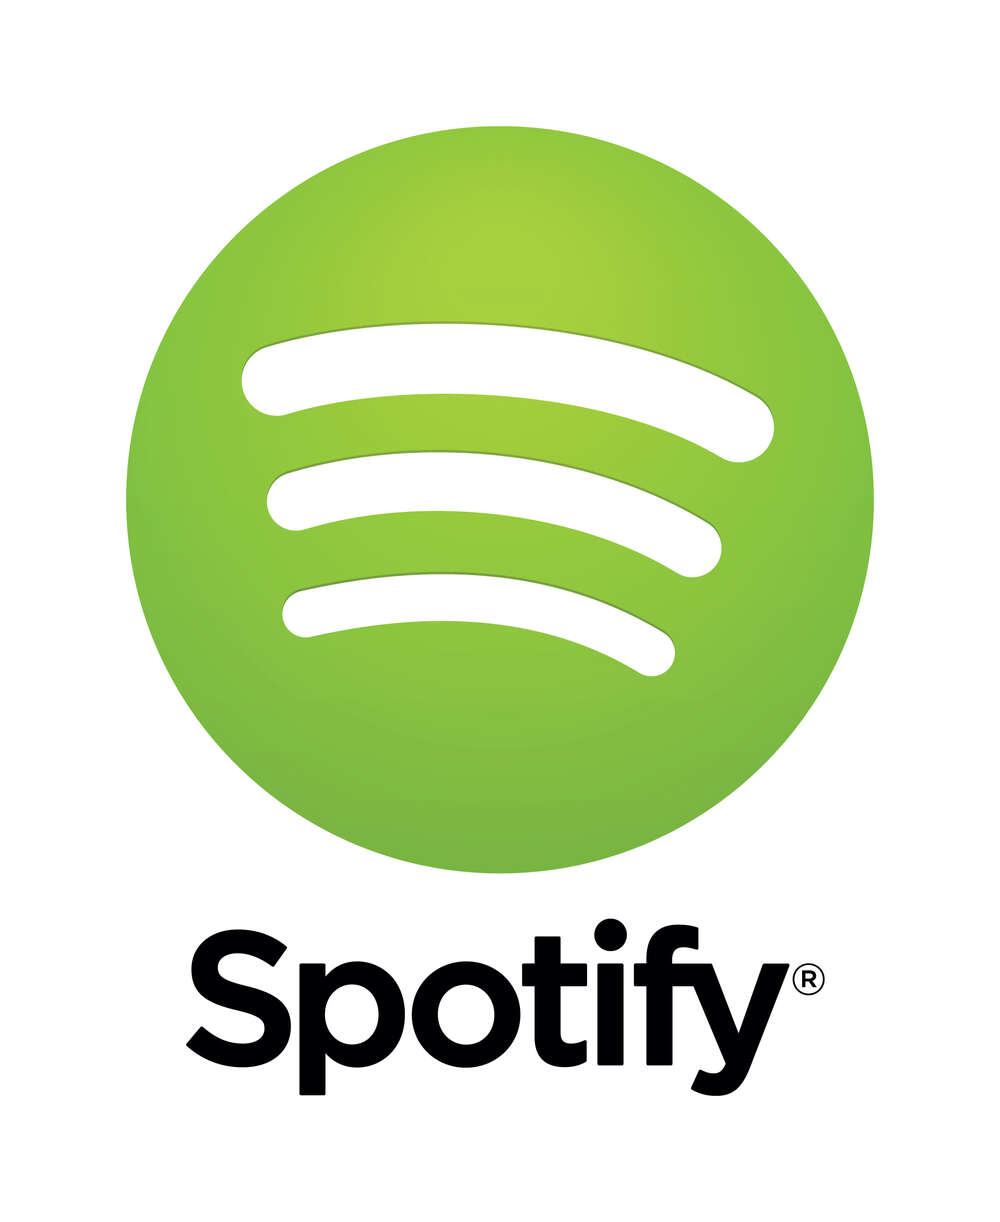 Spotify sai sijoittajilta yli puoli miljardia